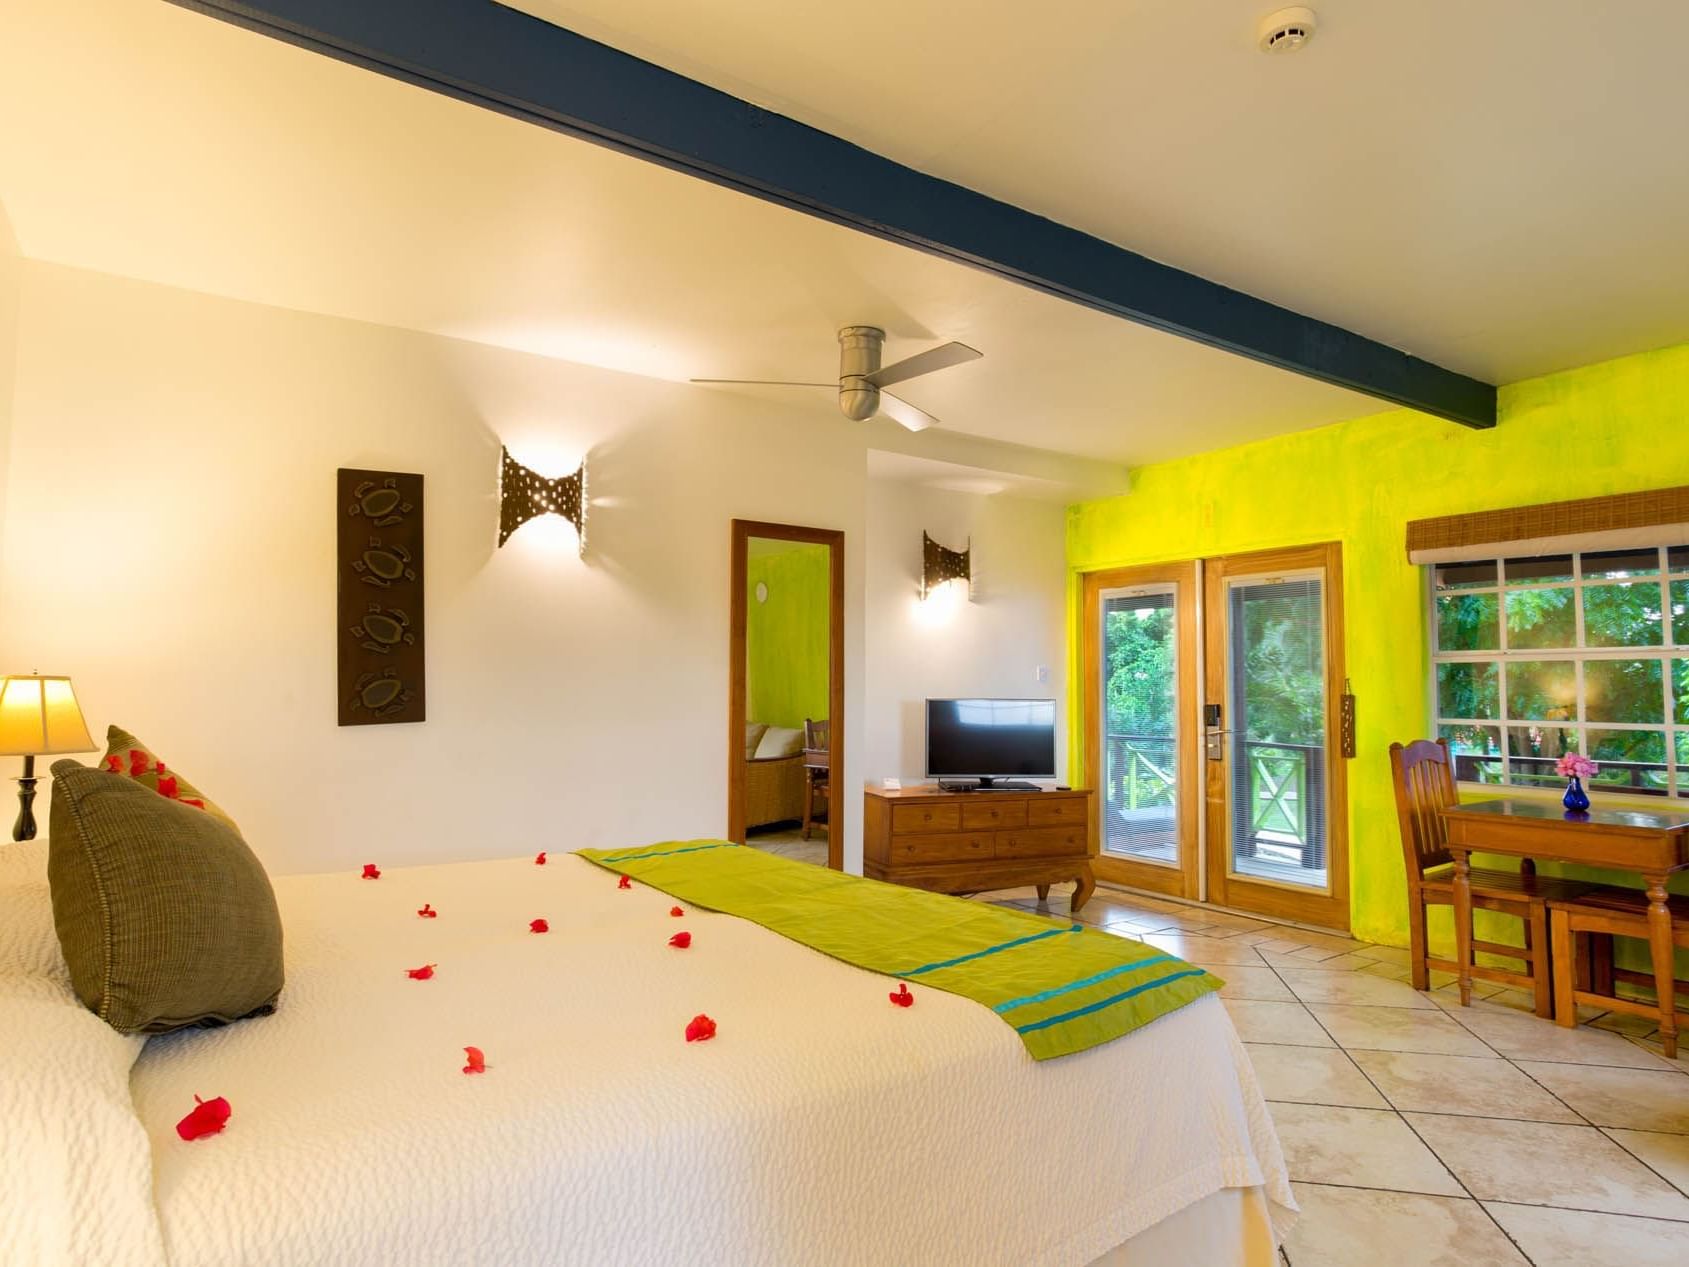 Bedroom arrangement in True Blue Rooms at True Blue Bay Resort